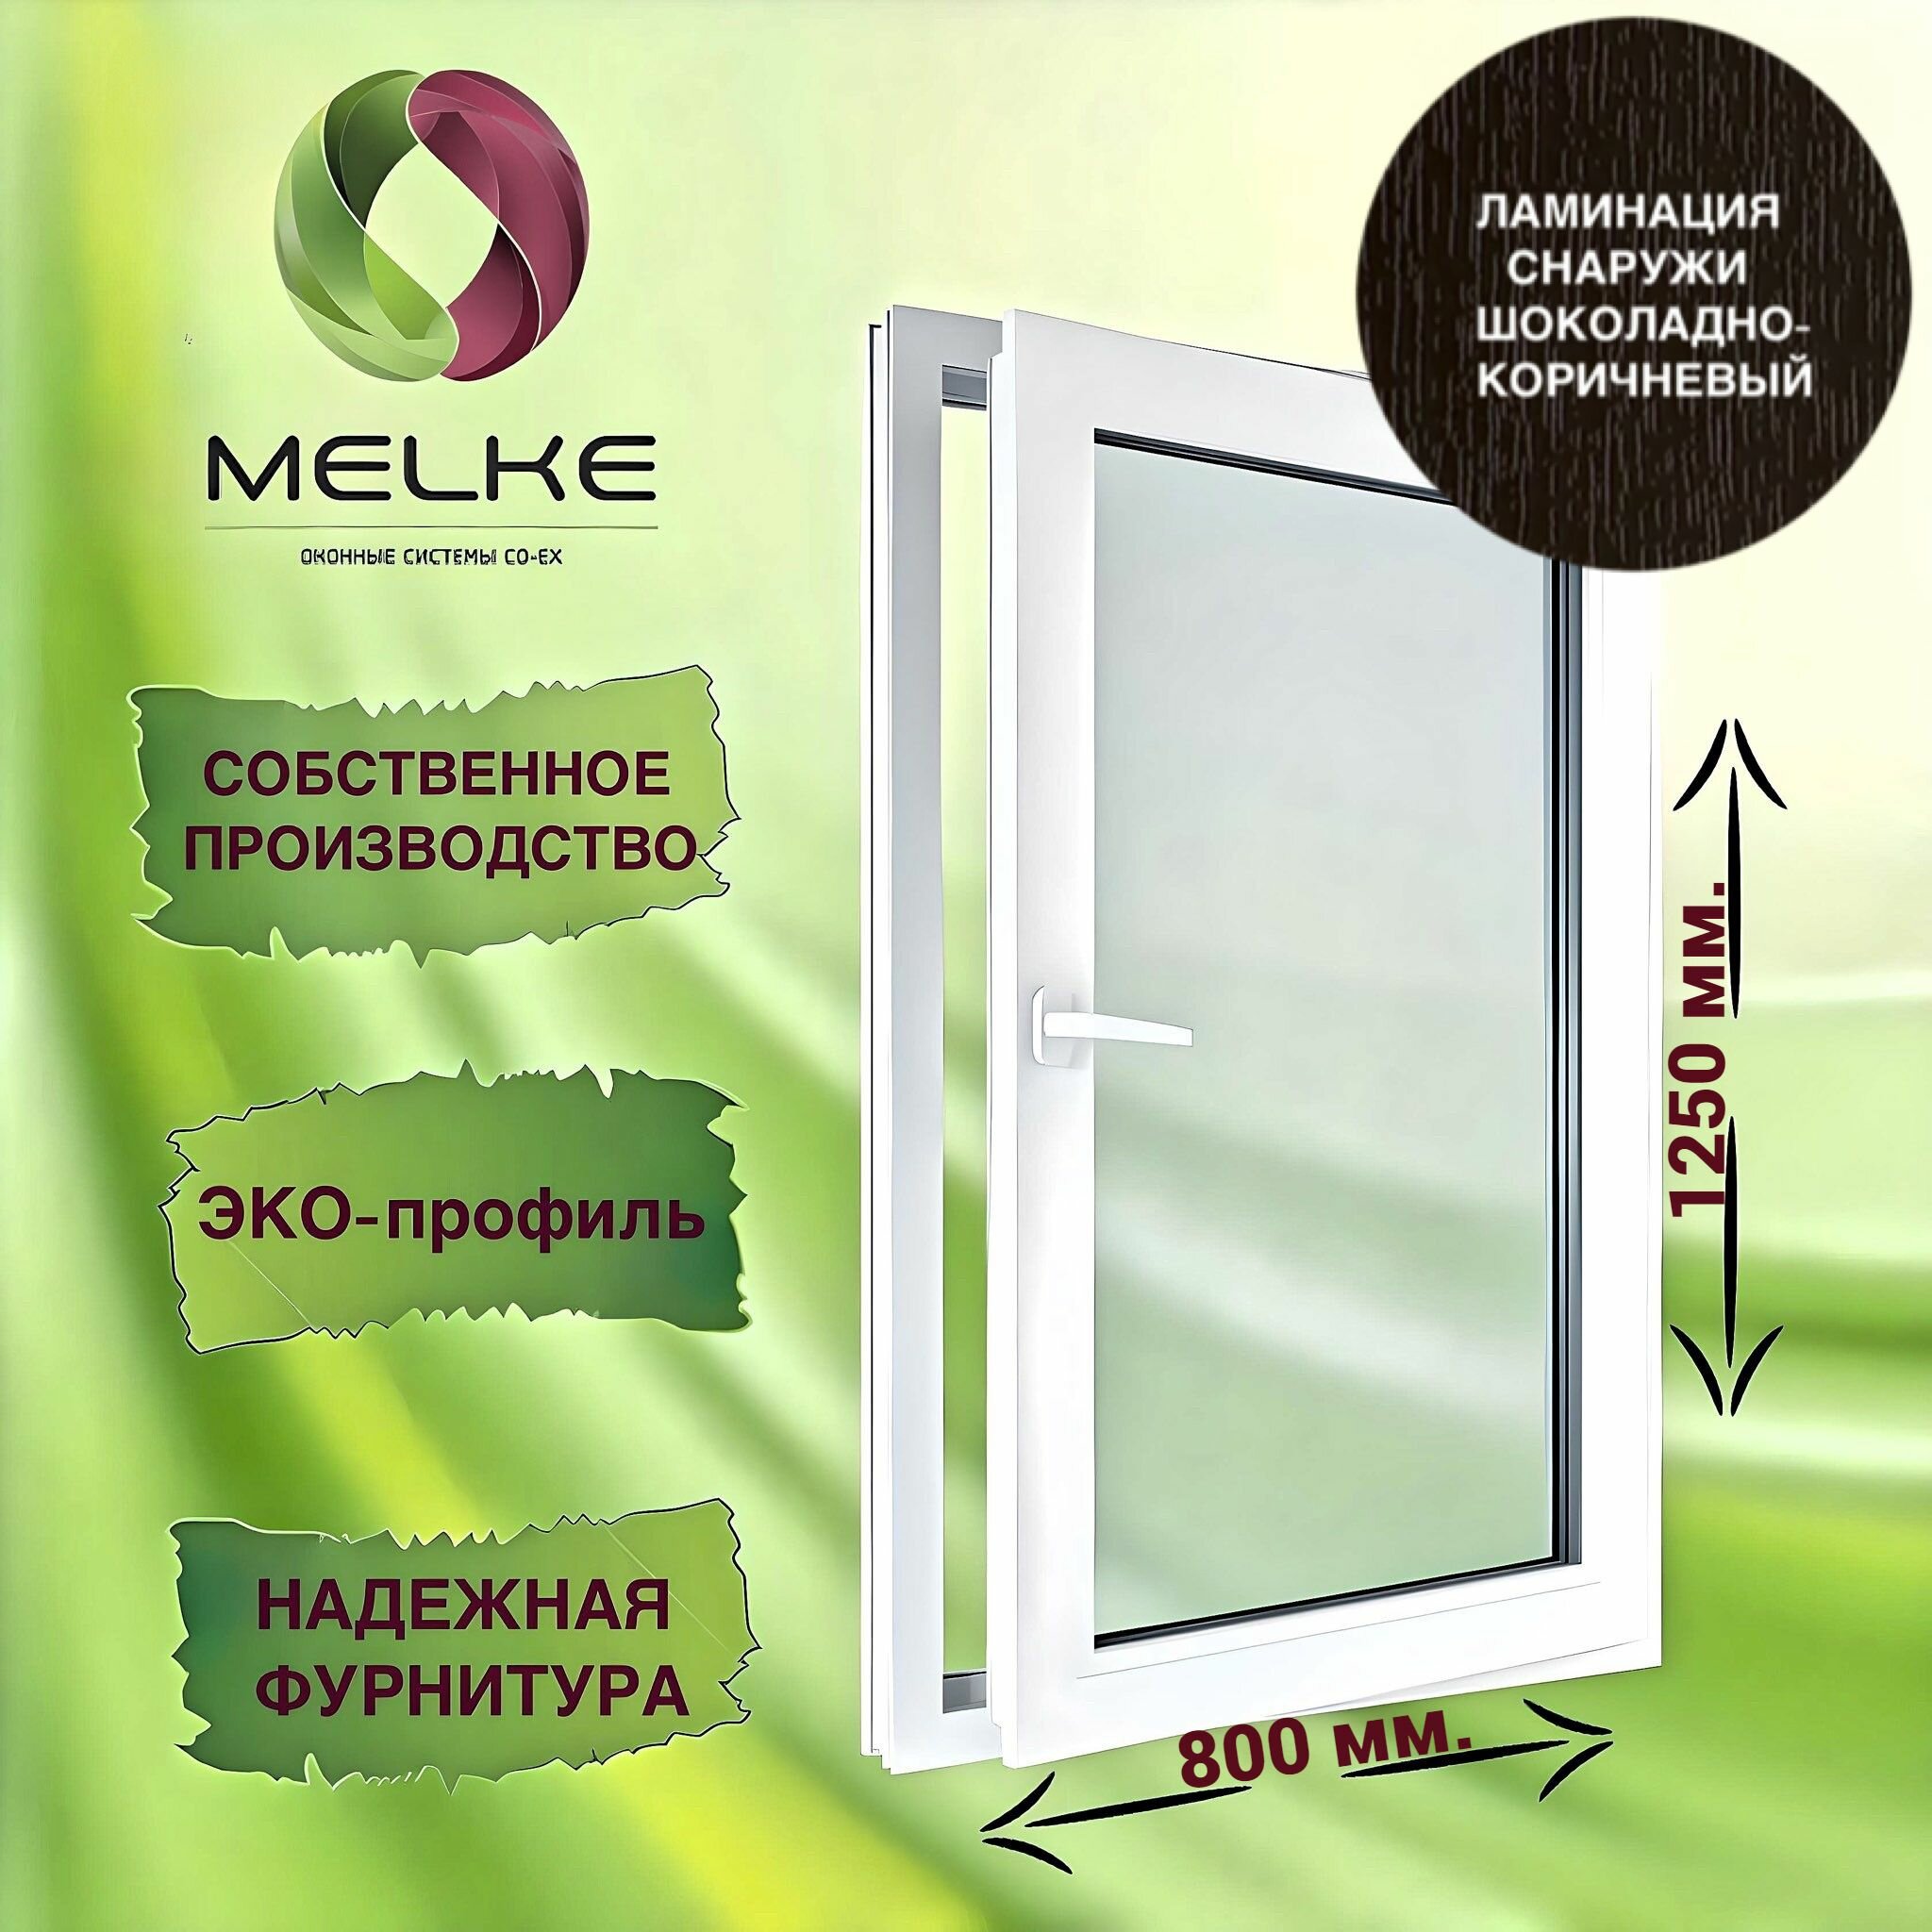 Окно 1250 х 800 мм, Melke 60 (Фурнитура FUTURUSS), правое одностворчатое, поворотно-откидное, цвет внешней ламинации Шоколадно-коричневый, 2-х камерный стеклопакет, 3 стекла